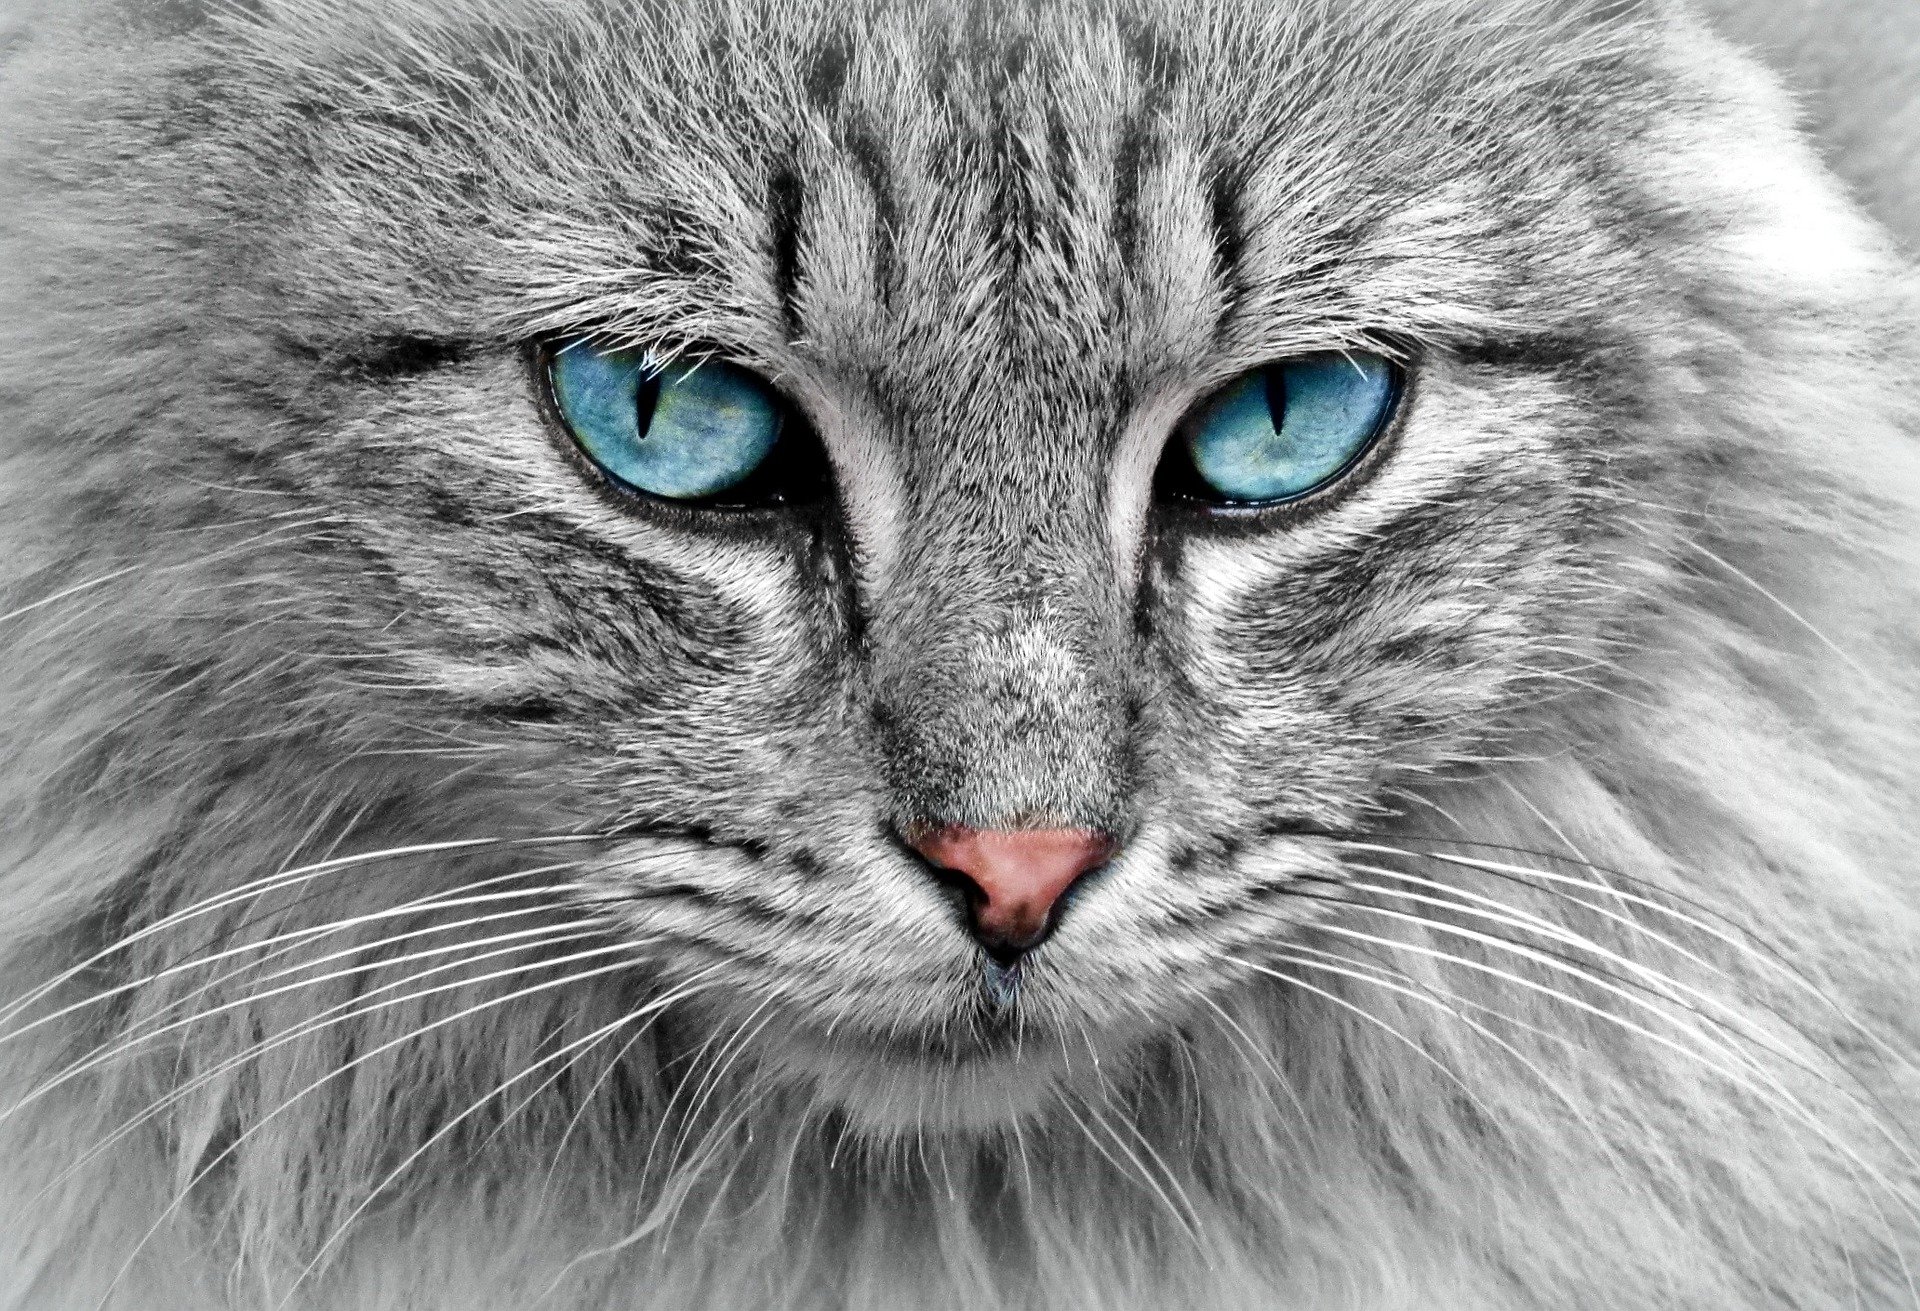 cat profile image